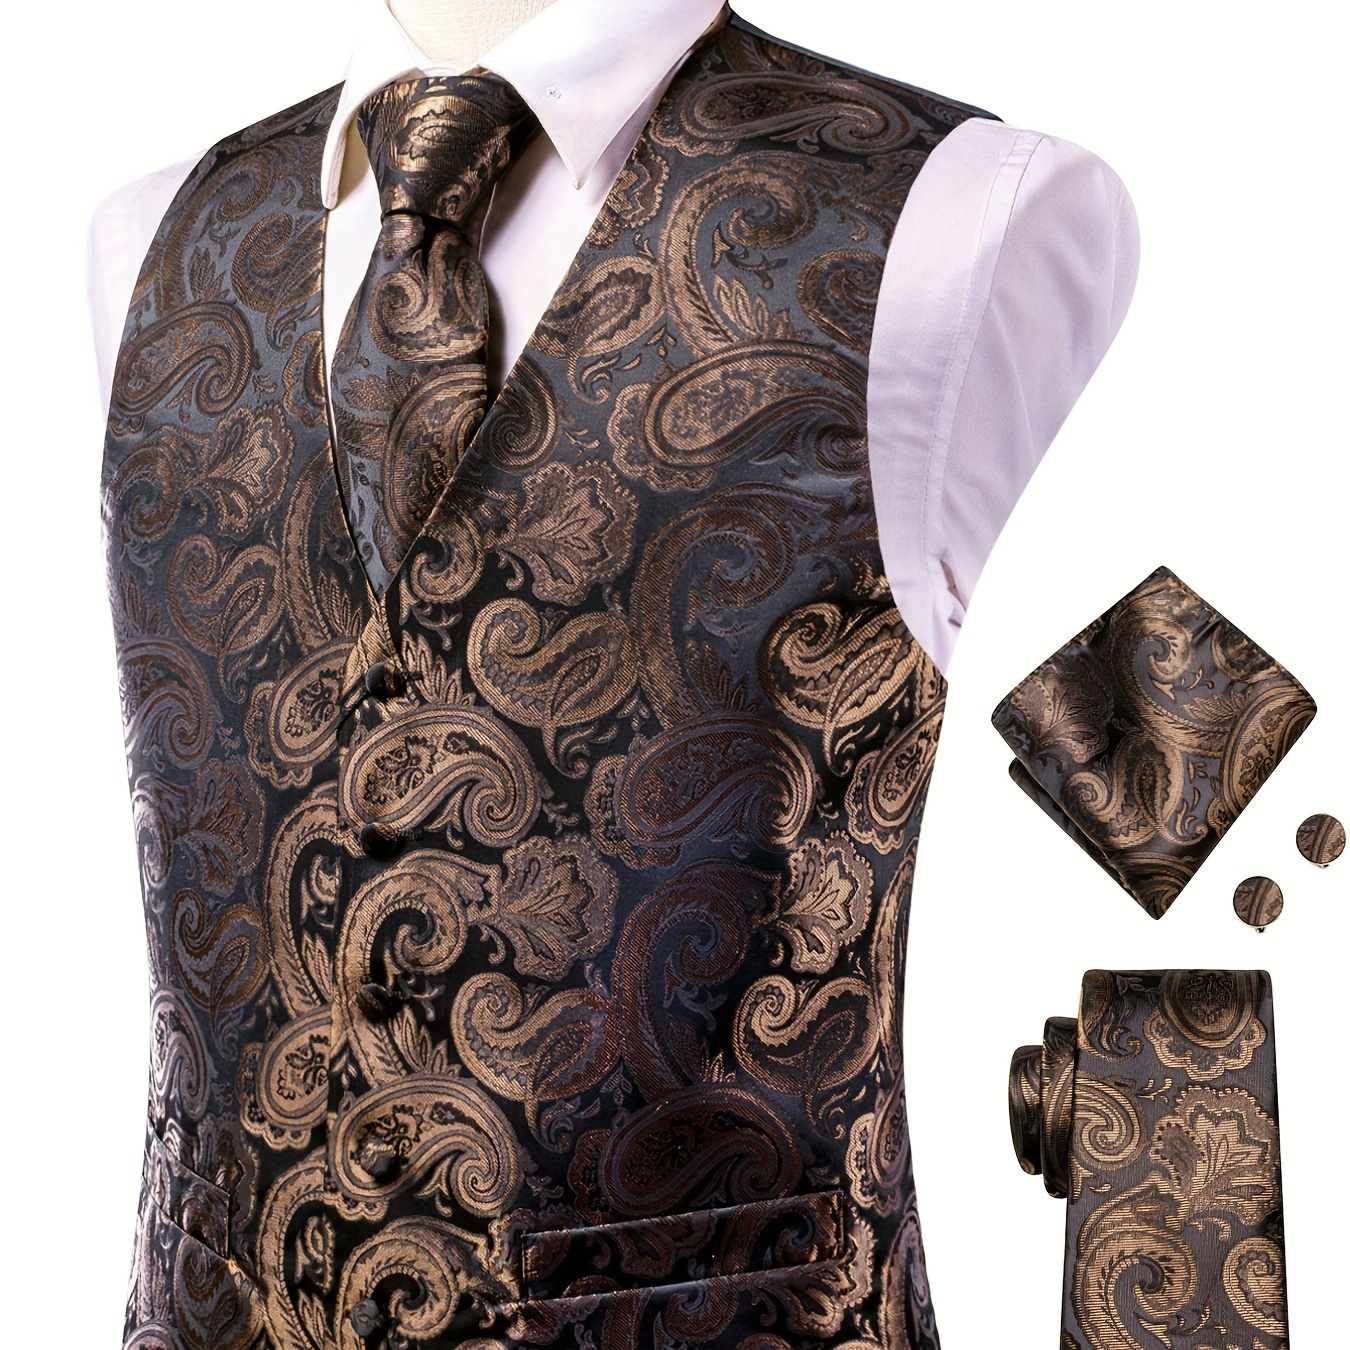 

4pcs Elegant Paisley Dress Set, Men's Formal Suit Vest & Tie & Cufflinks & Hanky Accessories Set For Dinner Wedding Banquet Party